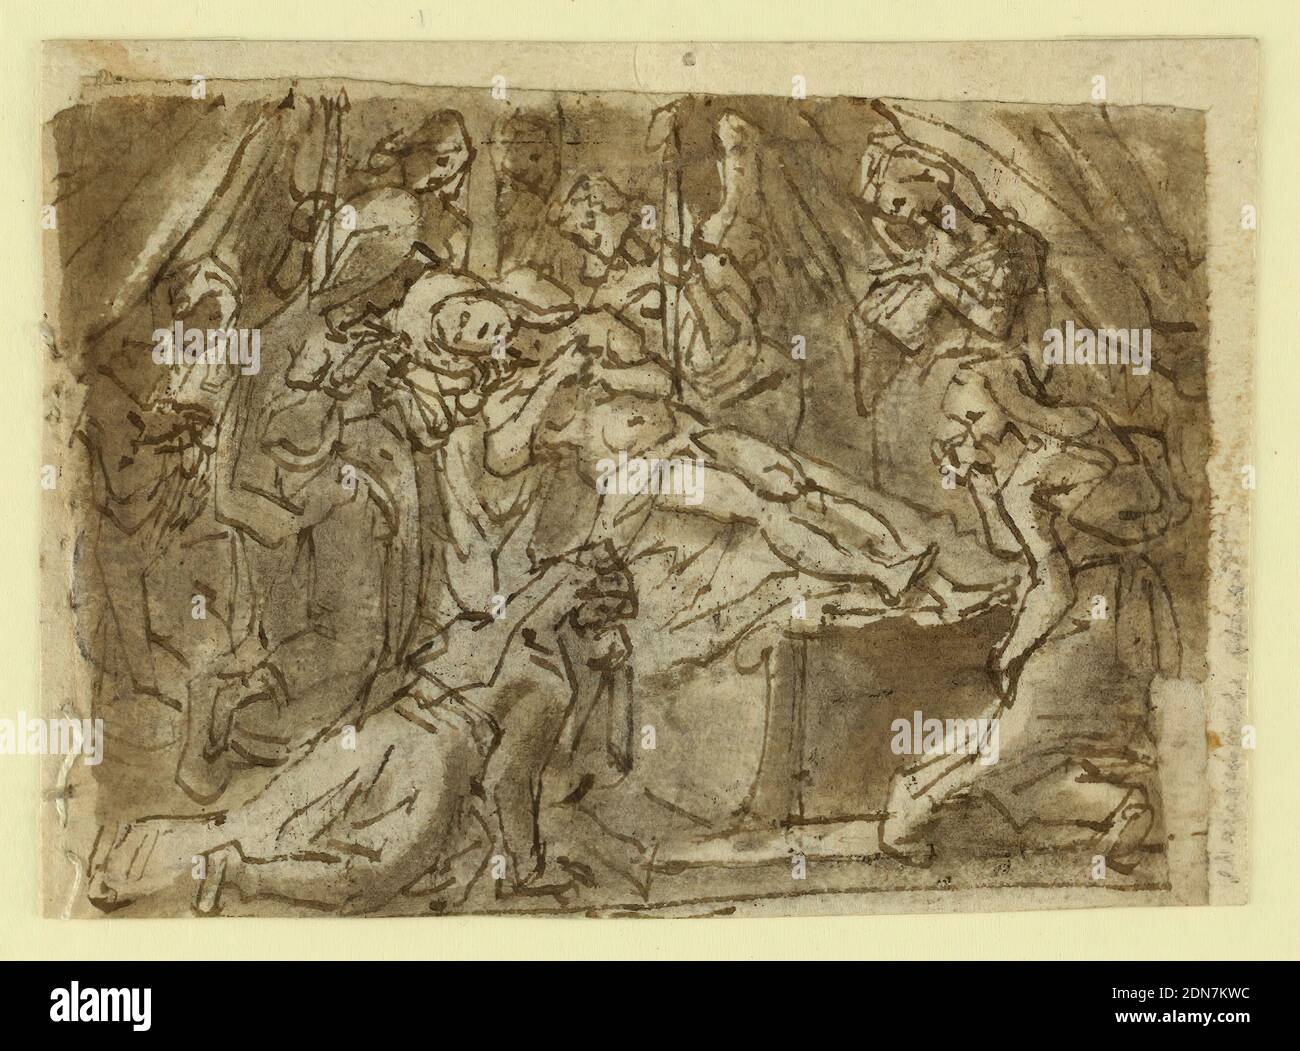 Recto: Lamentation sur le Christ mort; Verso: Peinture Zeuxis Helen de Troy, Jan van der Straet, appelée Stradanus, flamand, 1523–1605, craie noire, stylo et encre brune, lavage gris-brun sur papier couché, Recto: Le Christ est montré sur un sarcophage. Deux anges tiennent des bougies allumées près de sa tête. La Vierge s'agenouille à côté. Quatre autres femmes, et une figure indistincte dans le dos, pleurent le Christ mort. Vous trouverez ci-dessous une ligne de cadrage, dont une partie est sur -2648a. Quelques traits sur le bord inférieur appartiennent à -2648a. Verso, verticalement: Zeuxis utilise un certain nombre de modèles pour la mode d'une image de Helen de Troy Banque D'Images